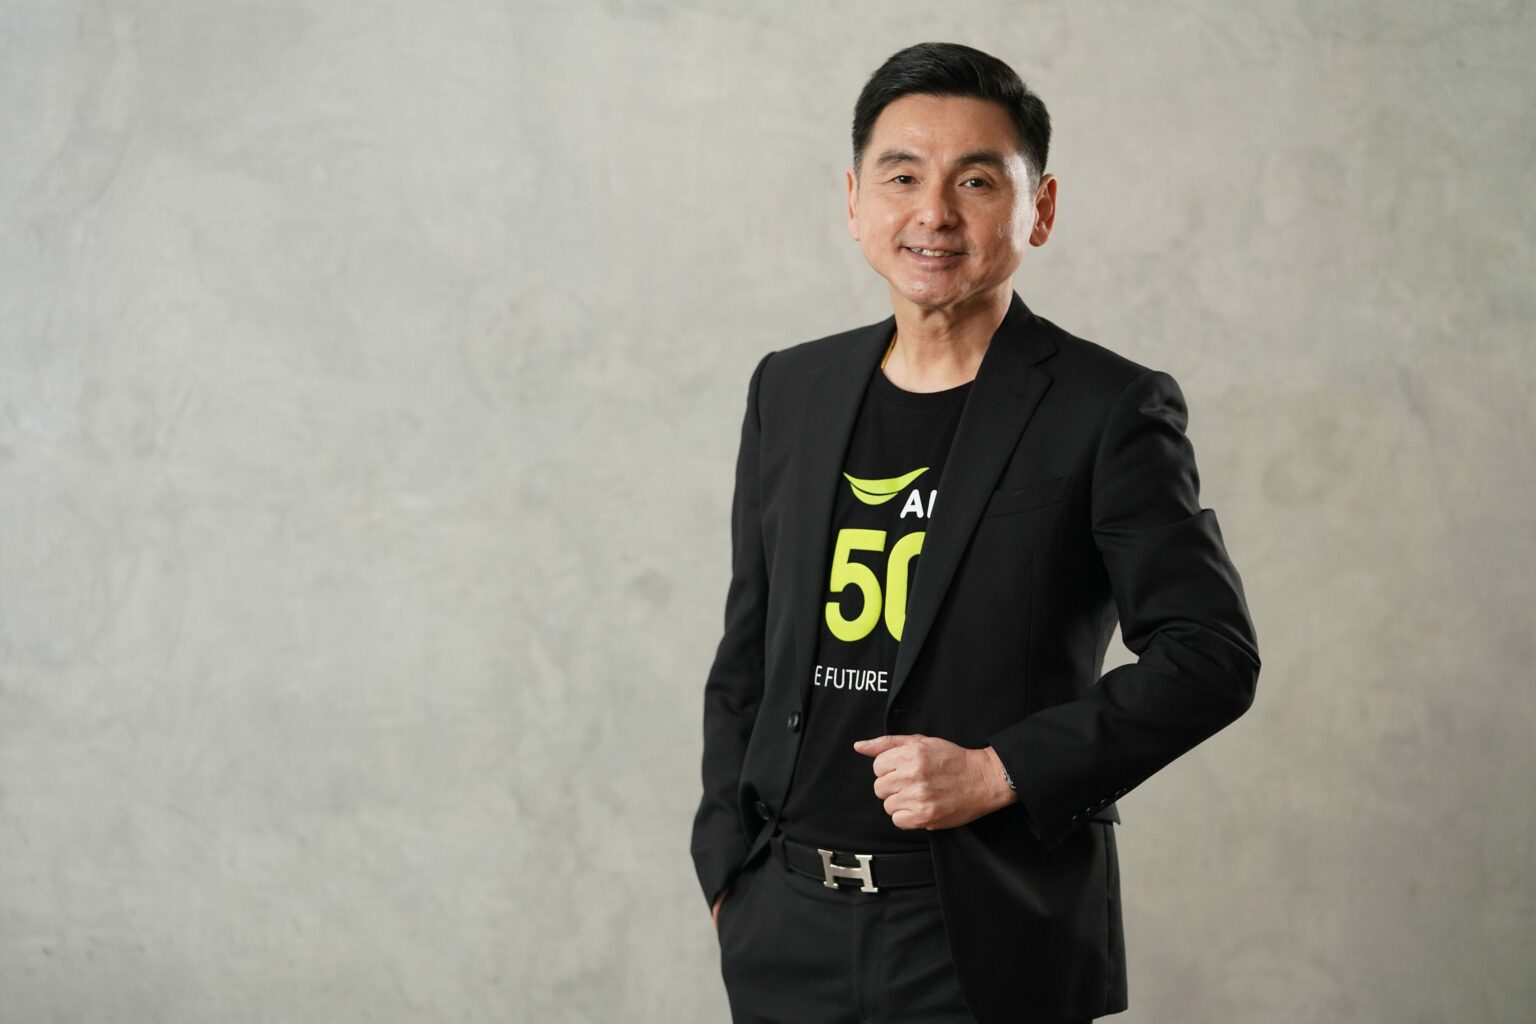 นายสมชัย เลิศสุทธิวงค์ ประธานเจ้าหน้าที่บริหาร เอไอเอส - Startup Thailand Focus